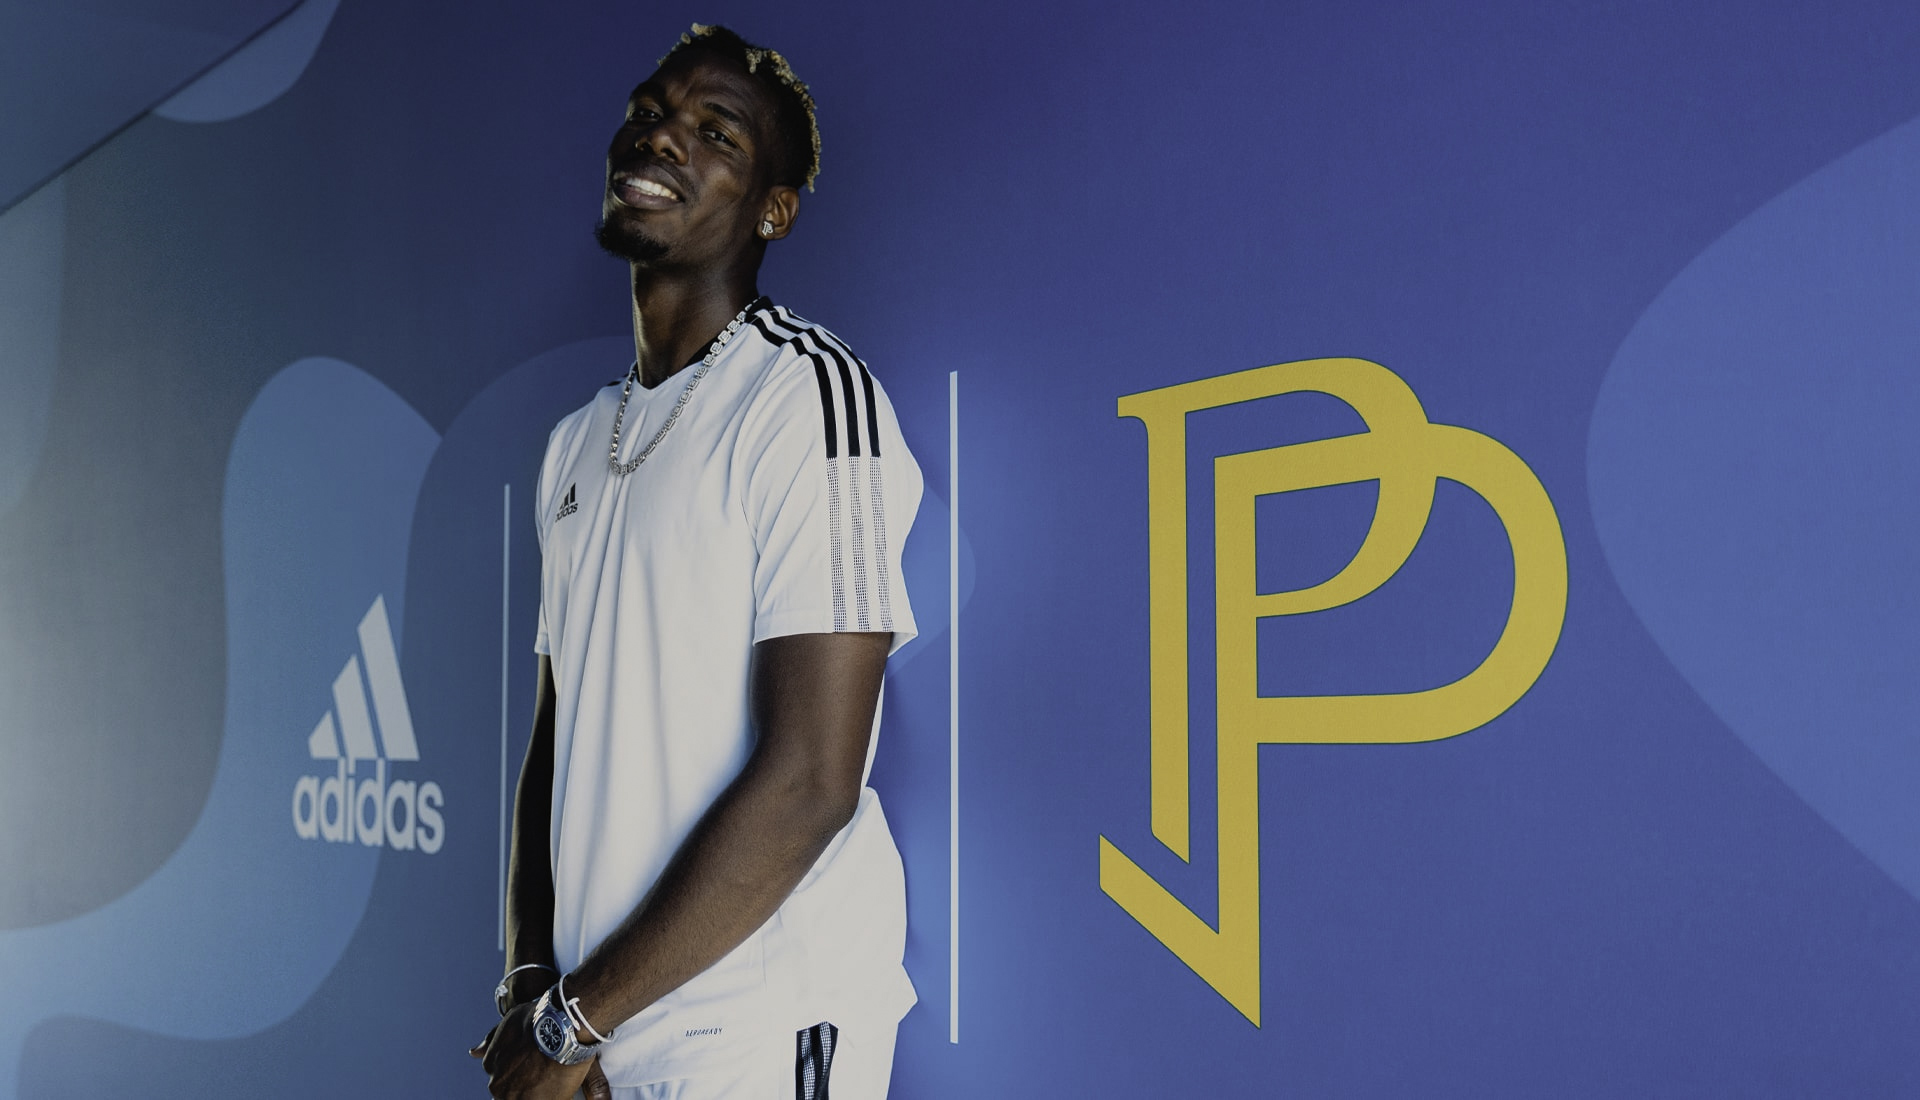 Cùng nhìn lại 5 năm hợp tác tuyệt vời giữa Adidas và ngôi sao bóng đá Paul Pogba